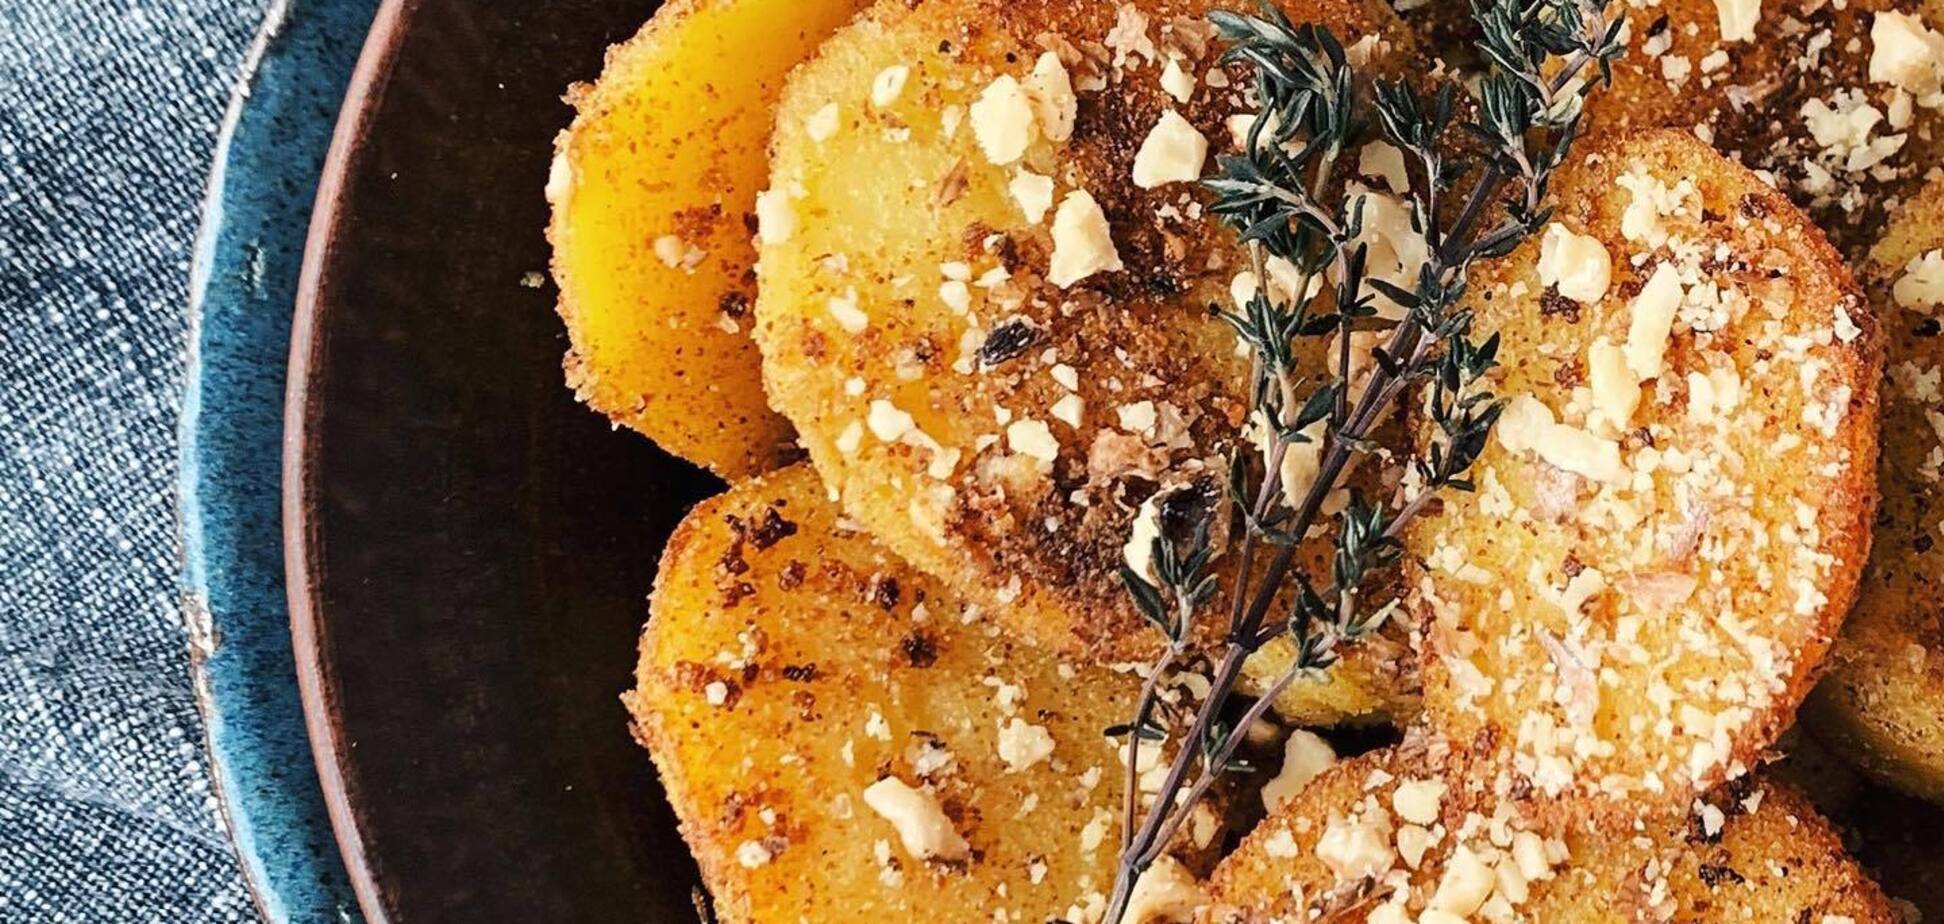 Жареный картофель с орехами: как по-новому приготовить популярное блюдо